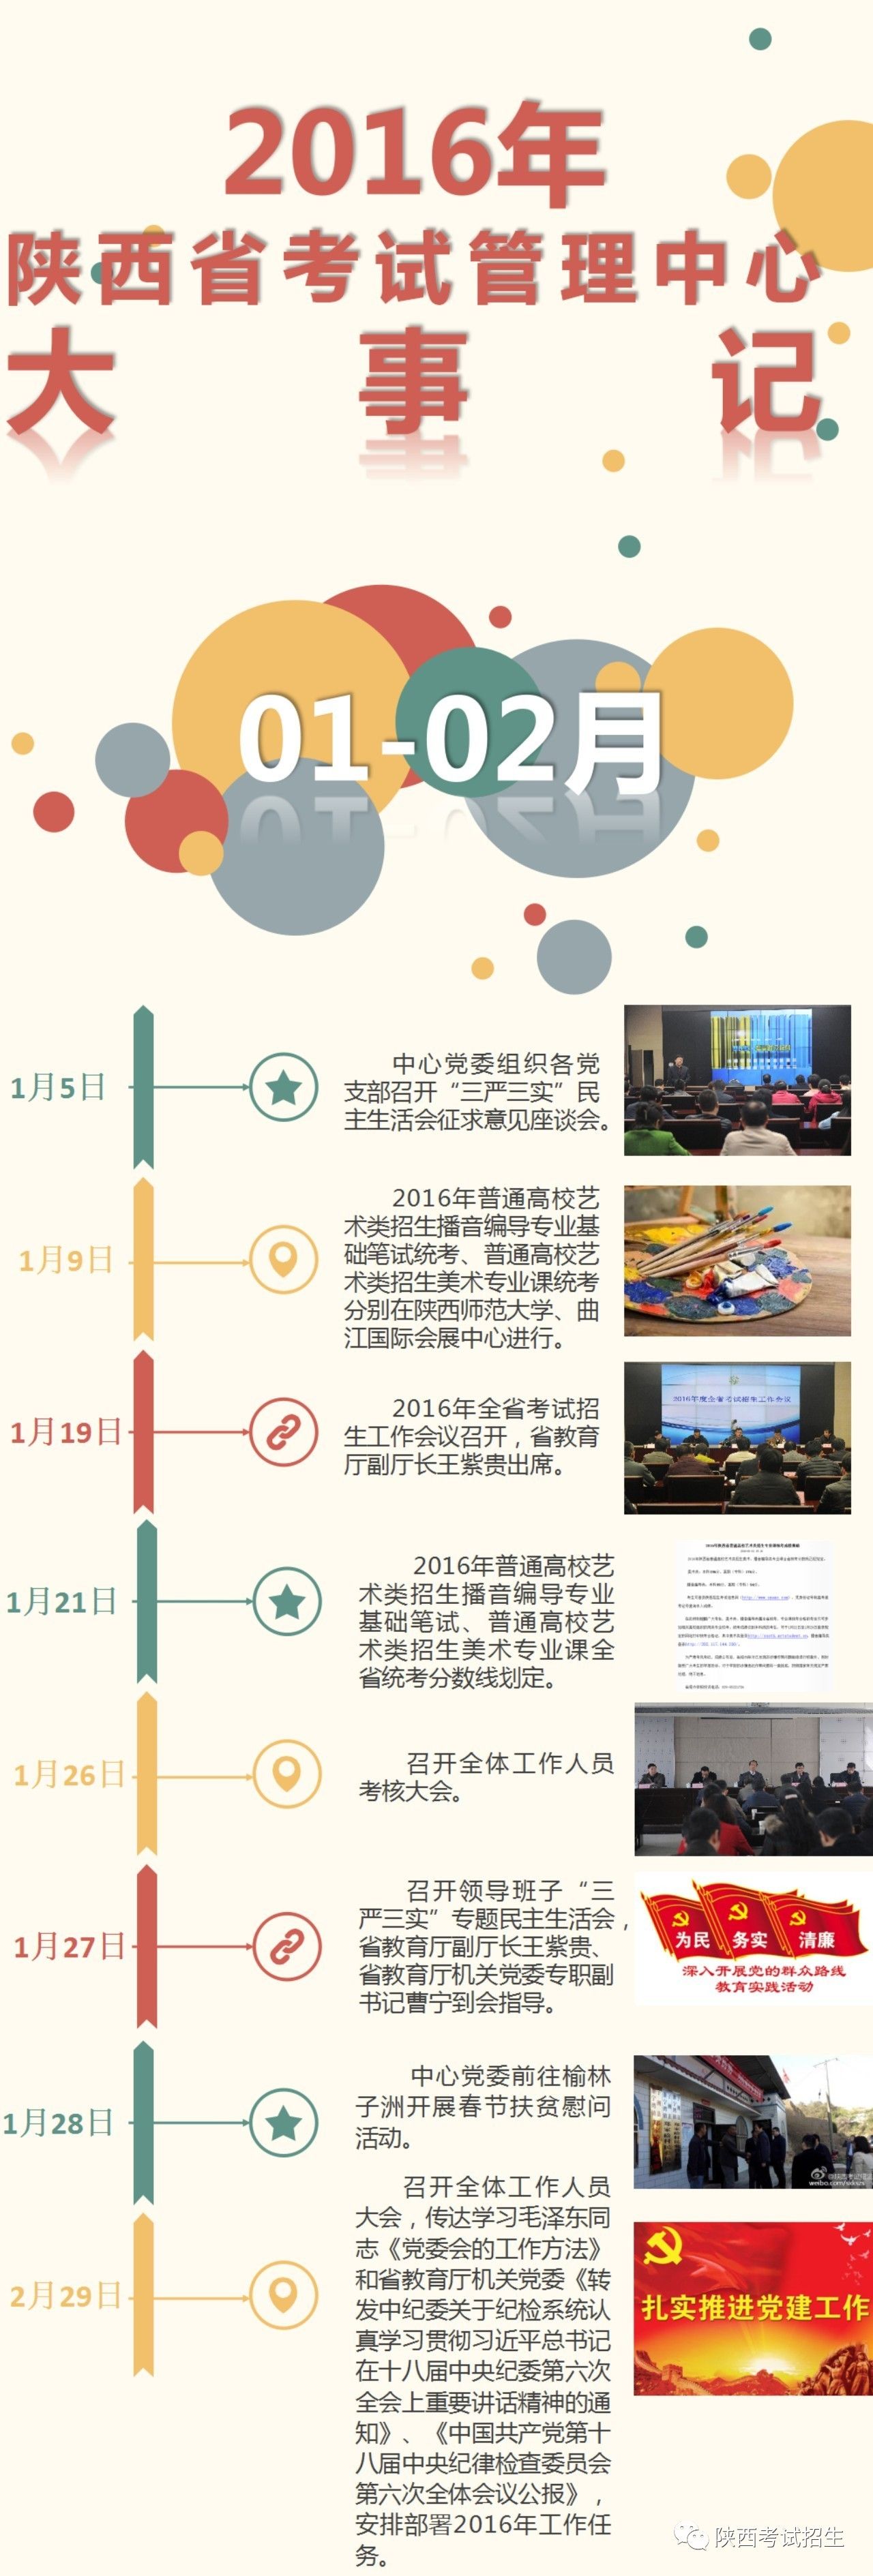 不忘过往,不畏将来-陕西省考试管理中心的201